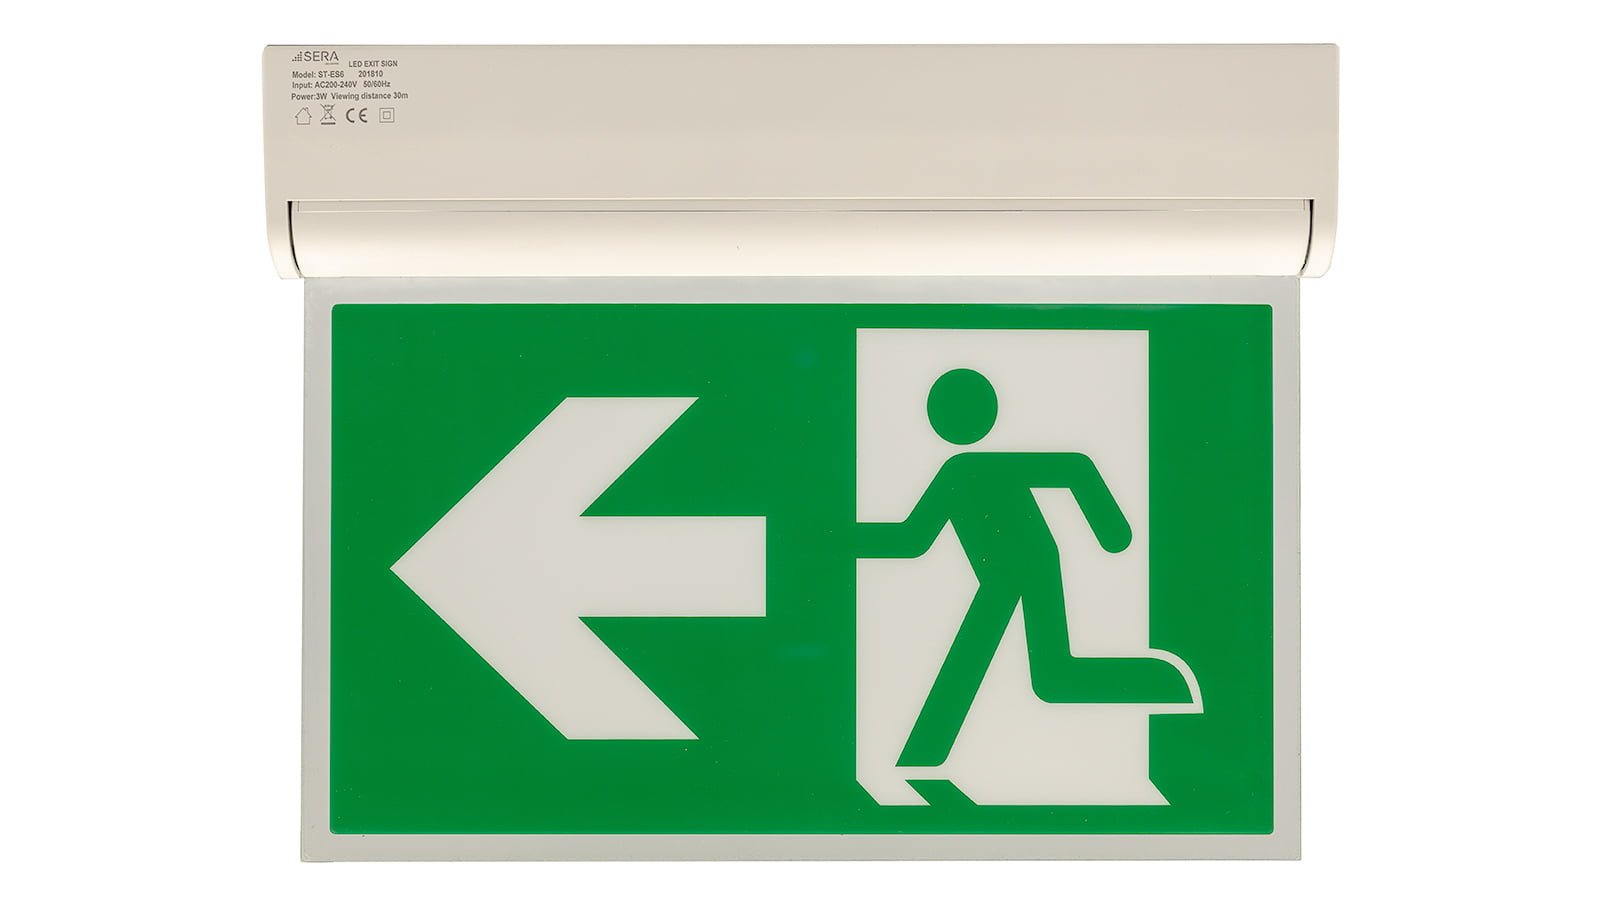 Знаки в комнату exit. Emergency exit sign. This way to the Emergency exit знак. Имо символ Emergency exit.